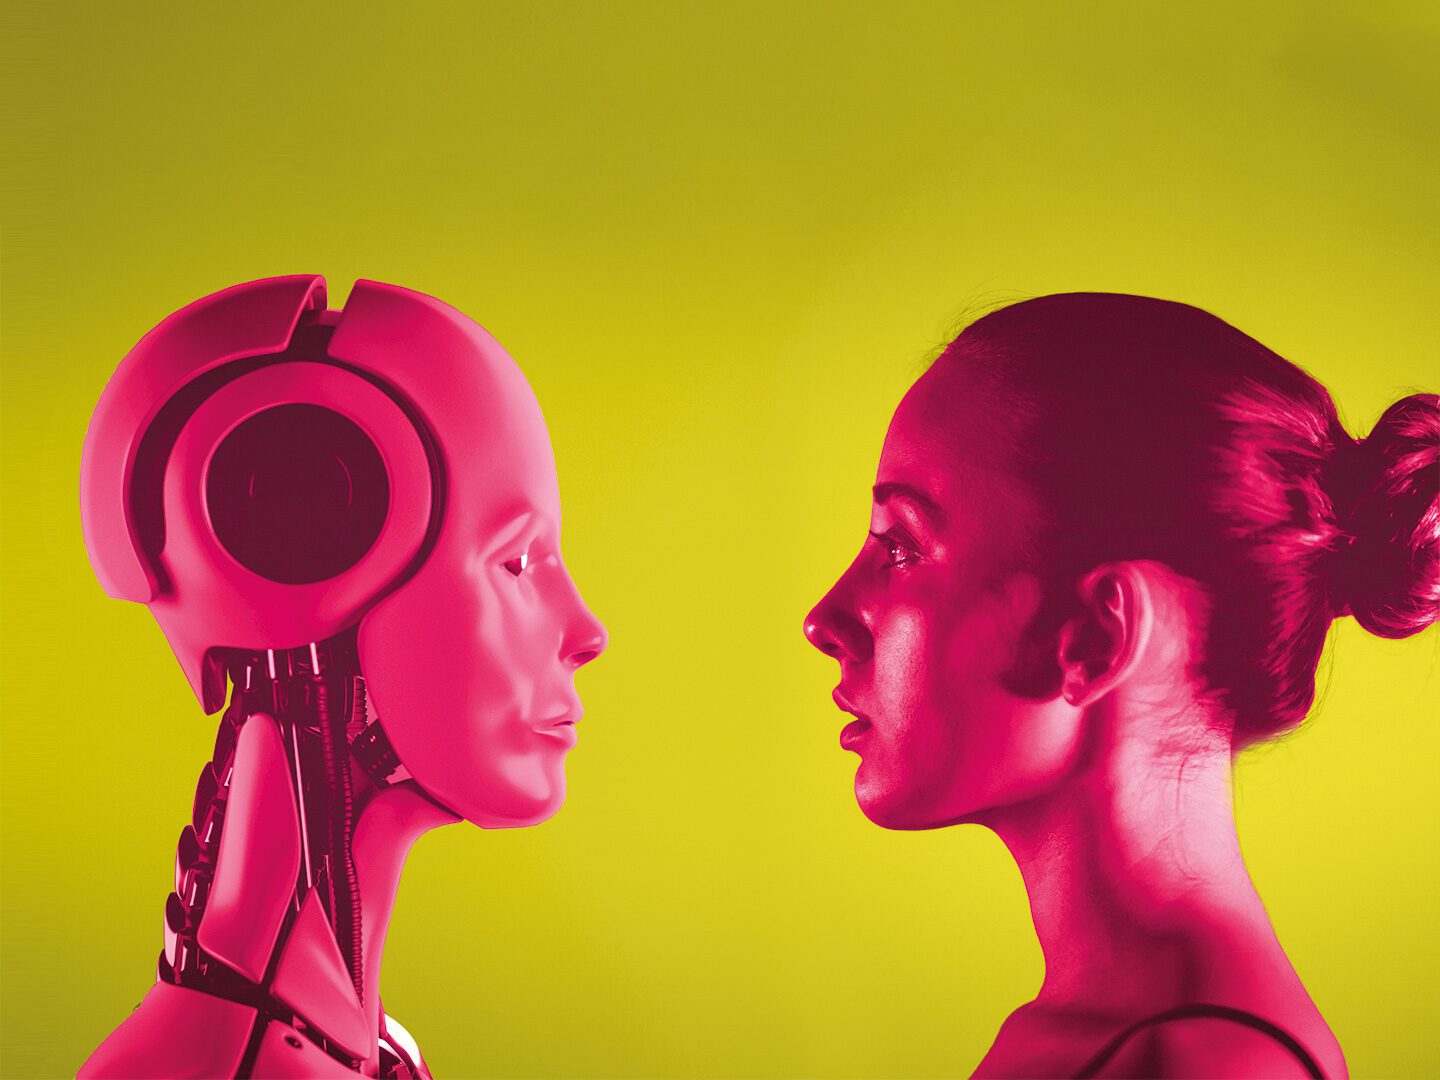 Links ein Kopf eines KI-Roboters in pink, rechts ein Frauenkopf in pink. Beides vor gelbem Hintergrund.